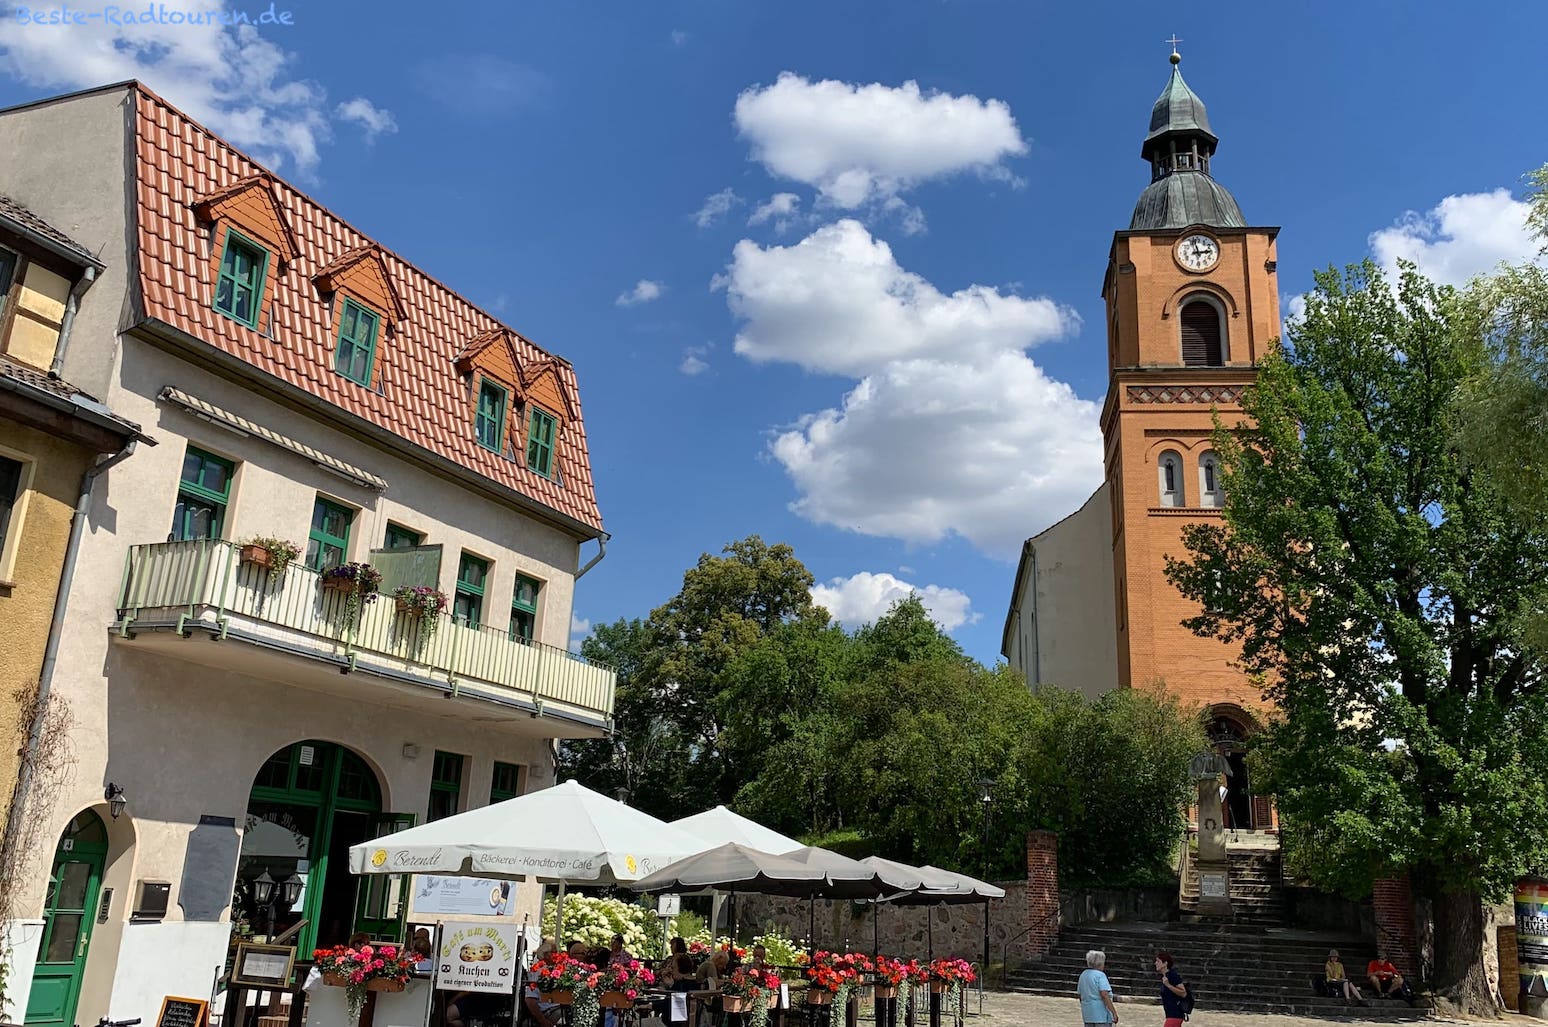 Marktplatz und Stadtpfarrkirche in Buckow/ Märkische Schweiz, Foto vom Radweg her, Restaurant mit Außenbereich / Biergarten